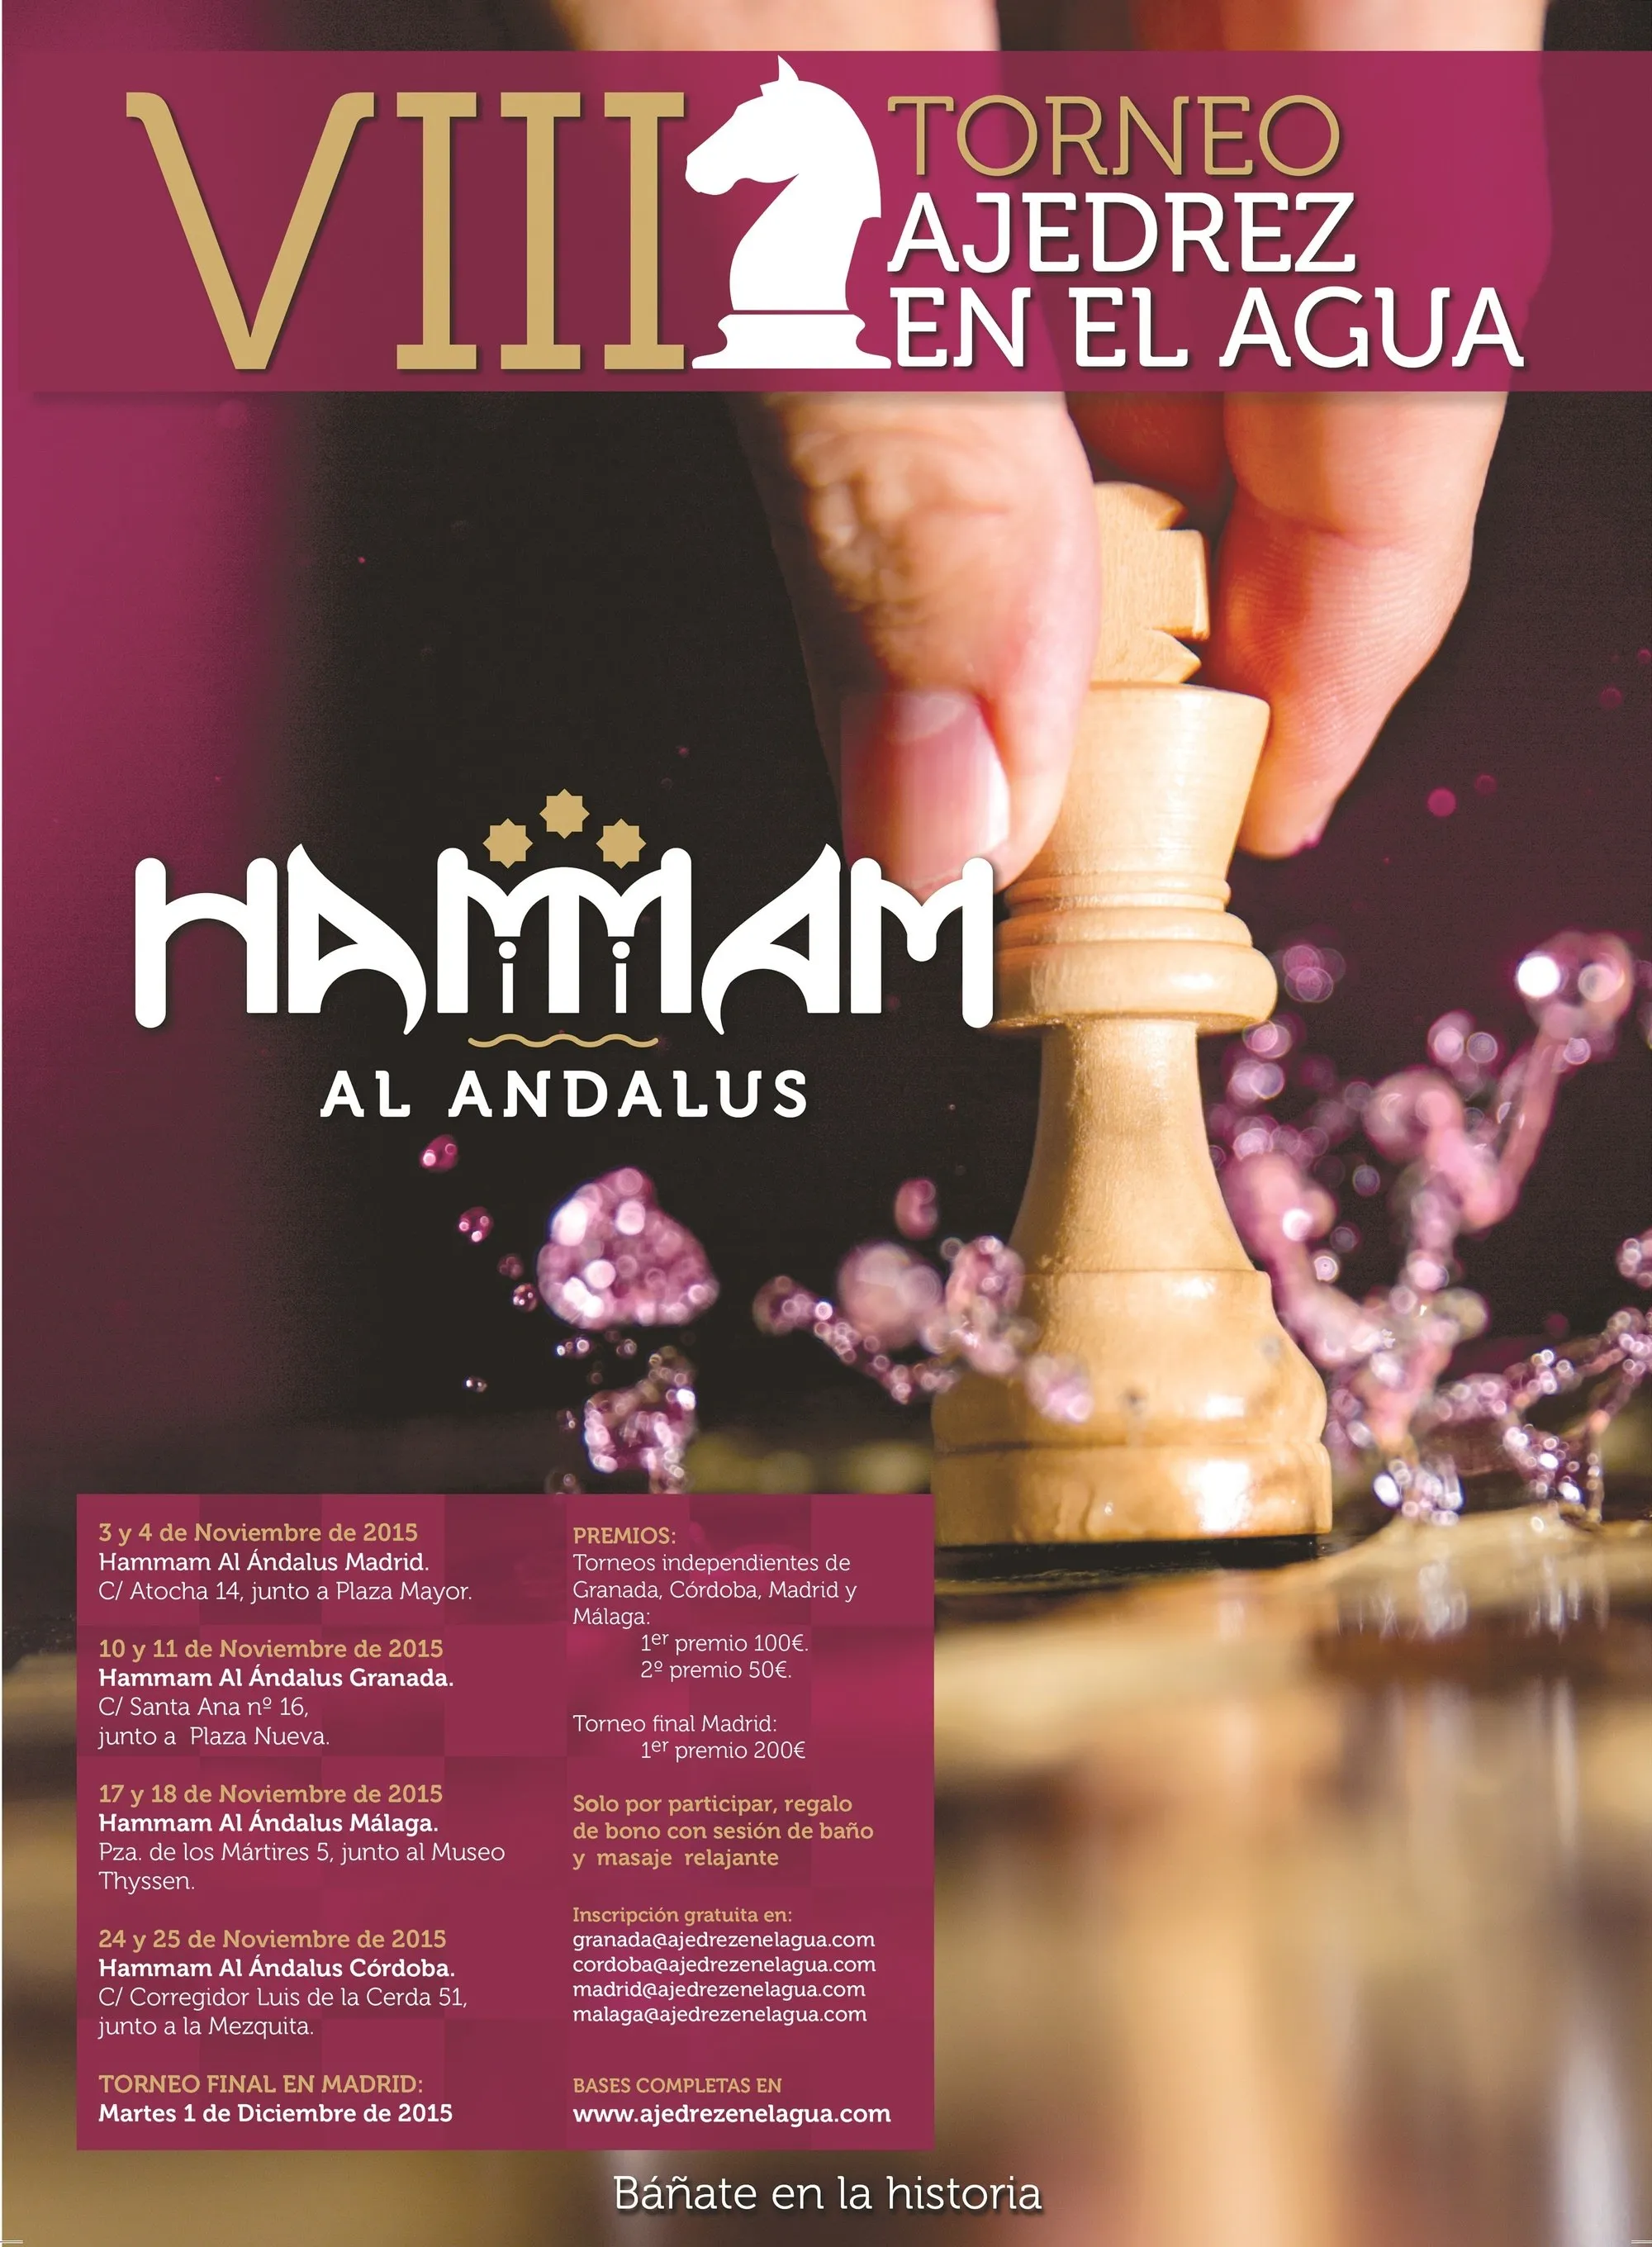 Cartel publicitario de Hammam al-Ándalus, 2015.